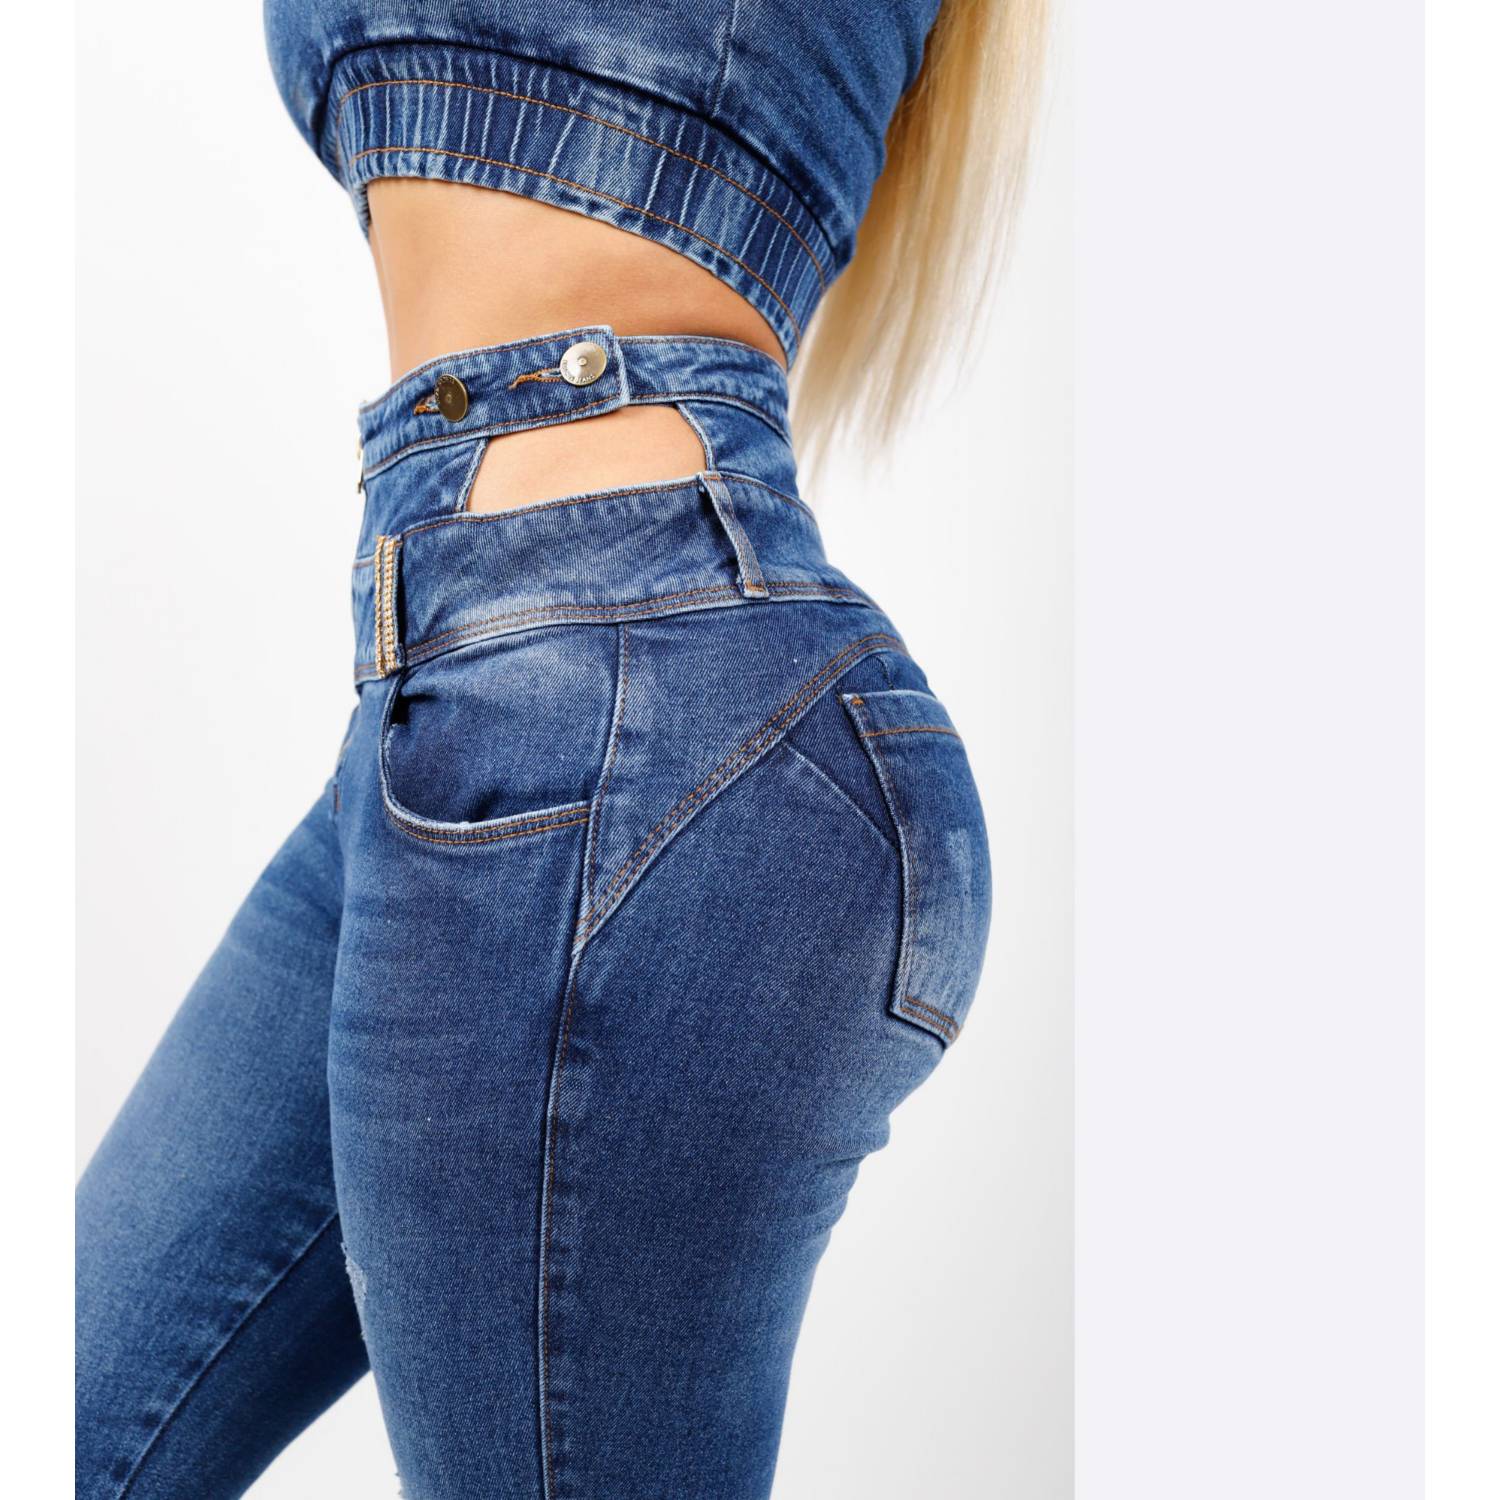 Conjunto Jeans Mujer, Pantalón Denim Acampanado + Top Jean GENERICO